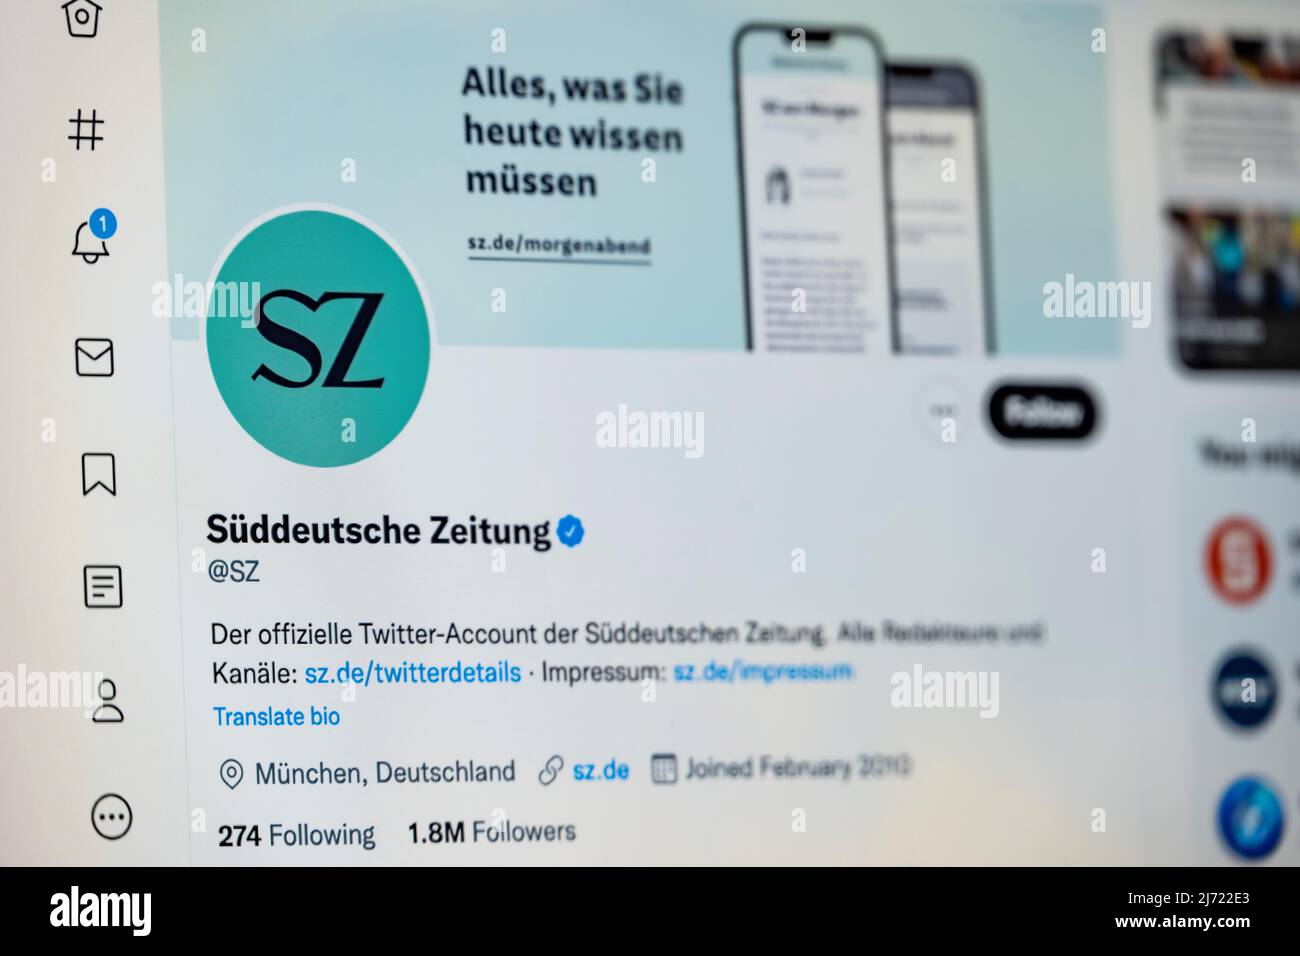 Twitter Seite der Sueddeutschen Zeitung, Twitter, Soziales Netzwerk, Internet, Internetseite, Bildschirmfoto, dettaglio, Germania Foto Stock